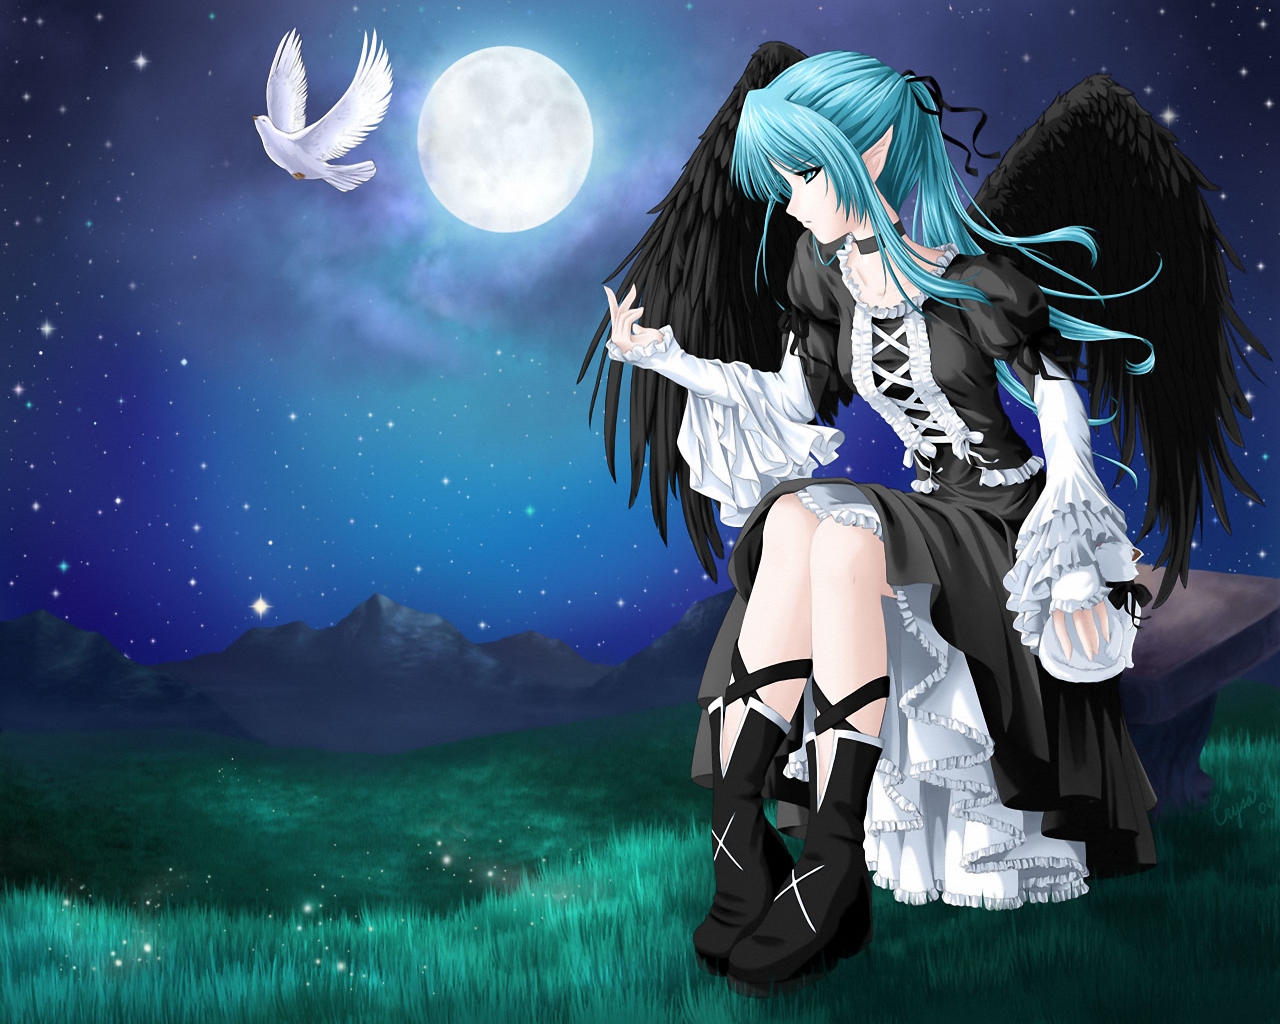 3d обои Девушка с чёрными крыльями лунной ночью сидит на скамейке и смотрит на улетающего с её руки белого голубя  птицы # 75719